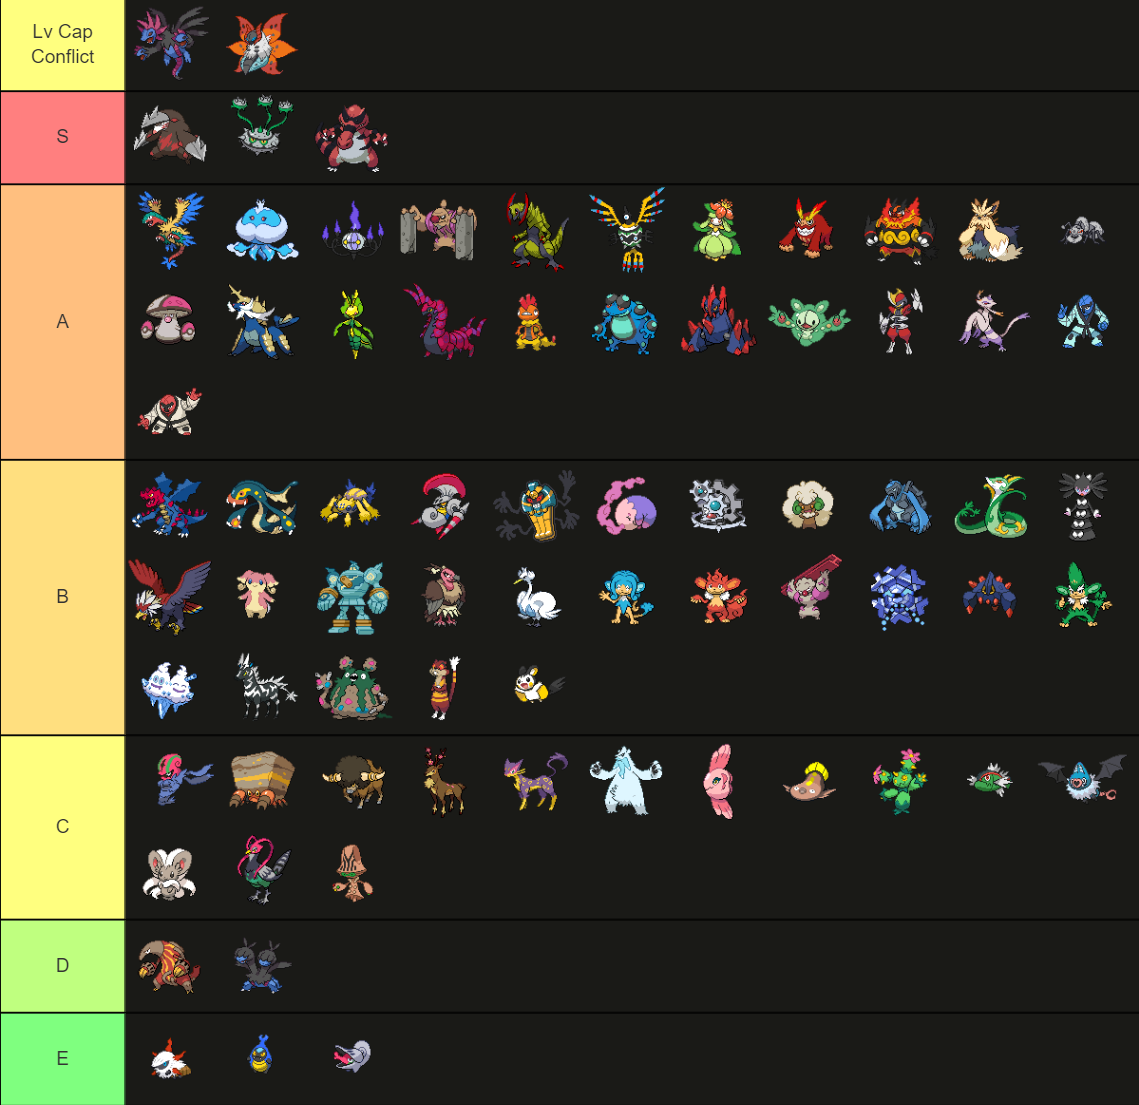 Pokemon GO tier list: All Starter Pokemon